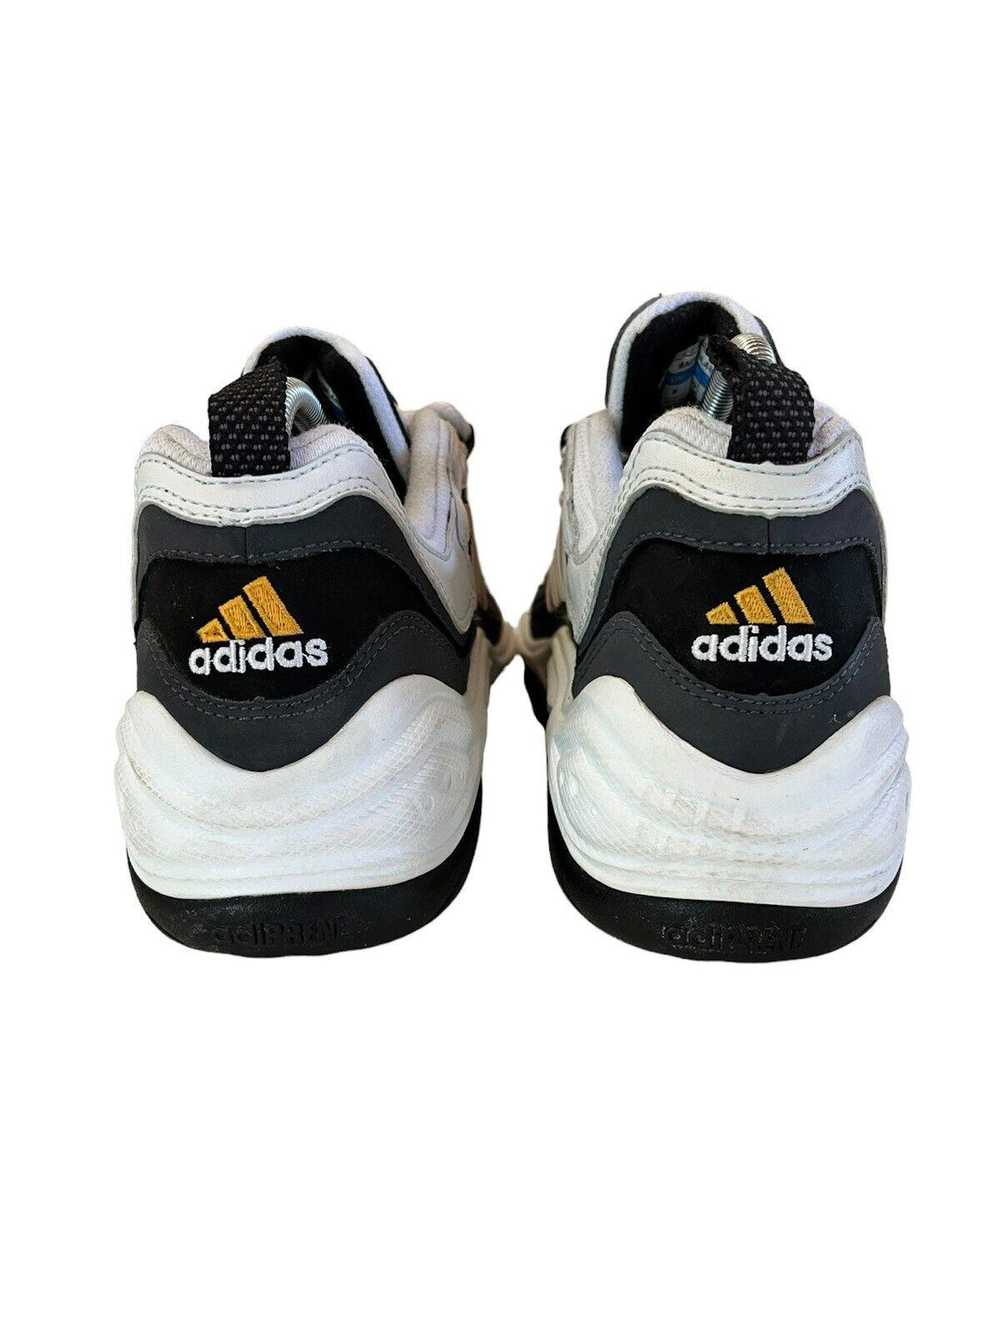 Adidas 1998 Vintage Adidas White Black Running Sh… - image 5